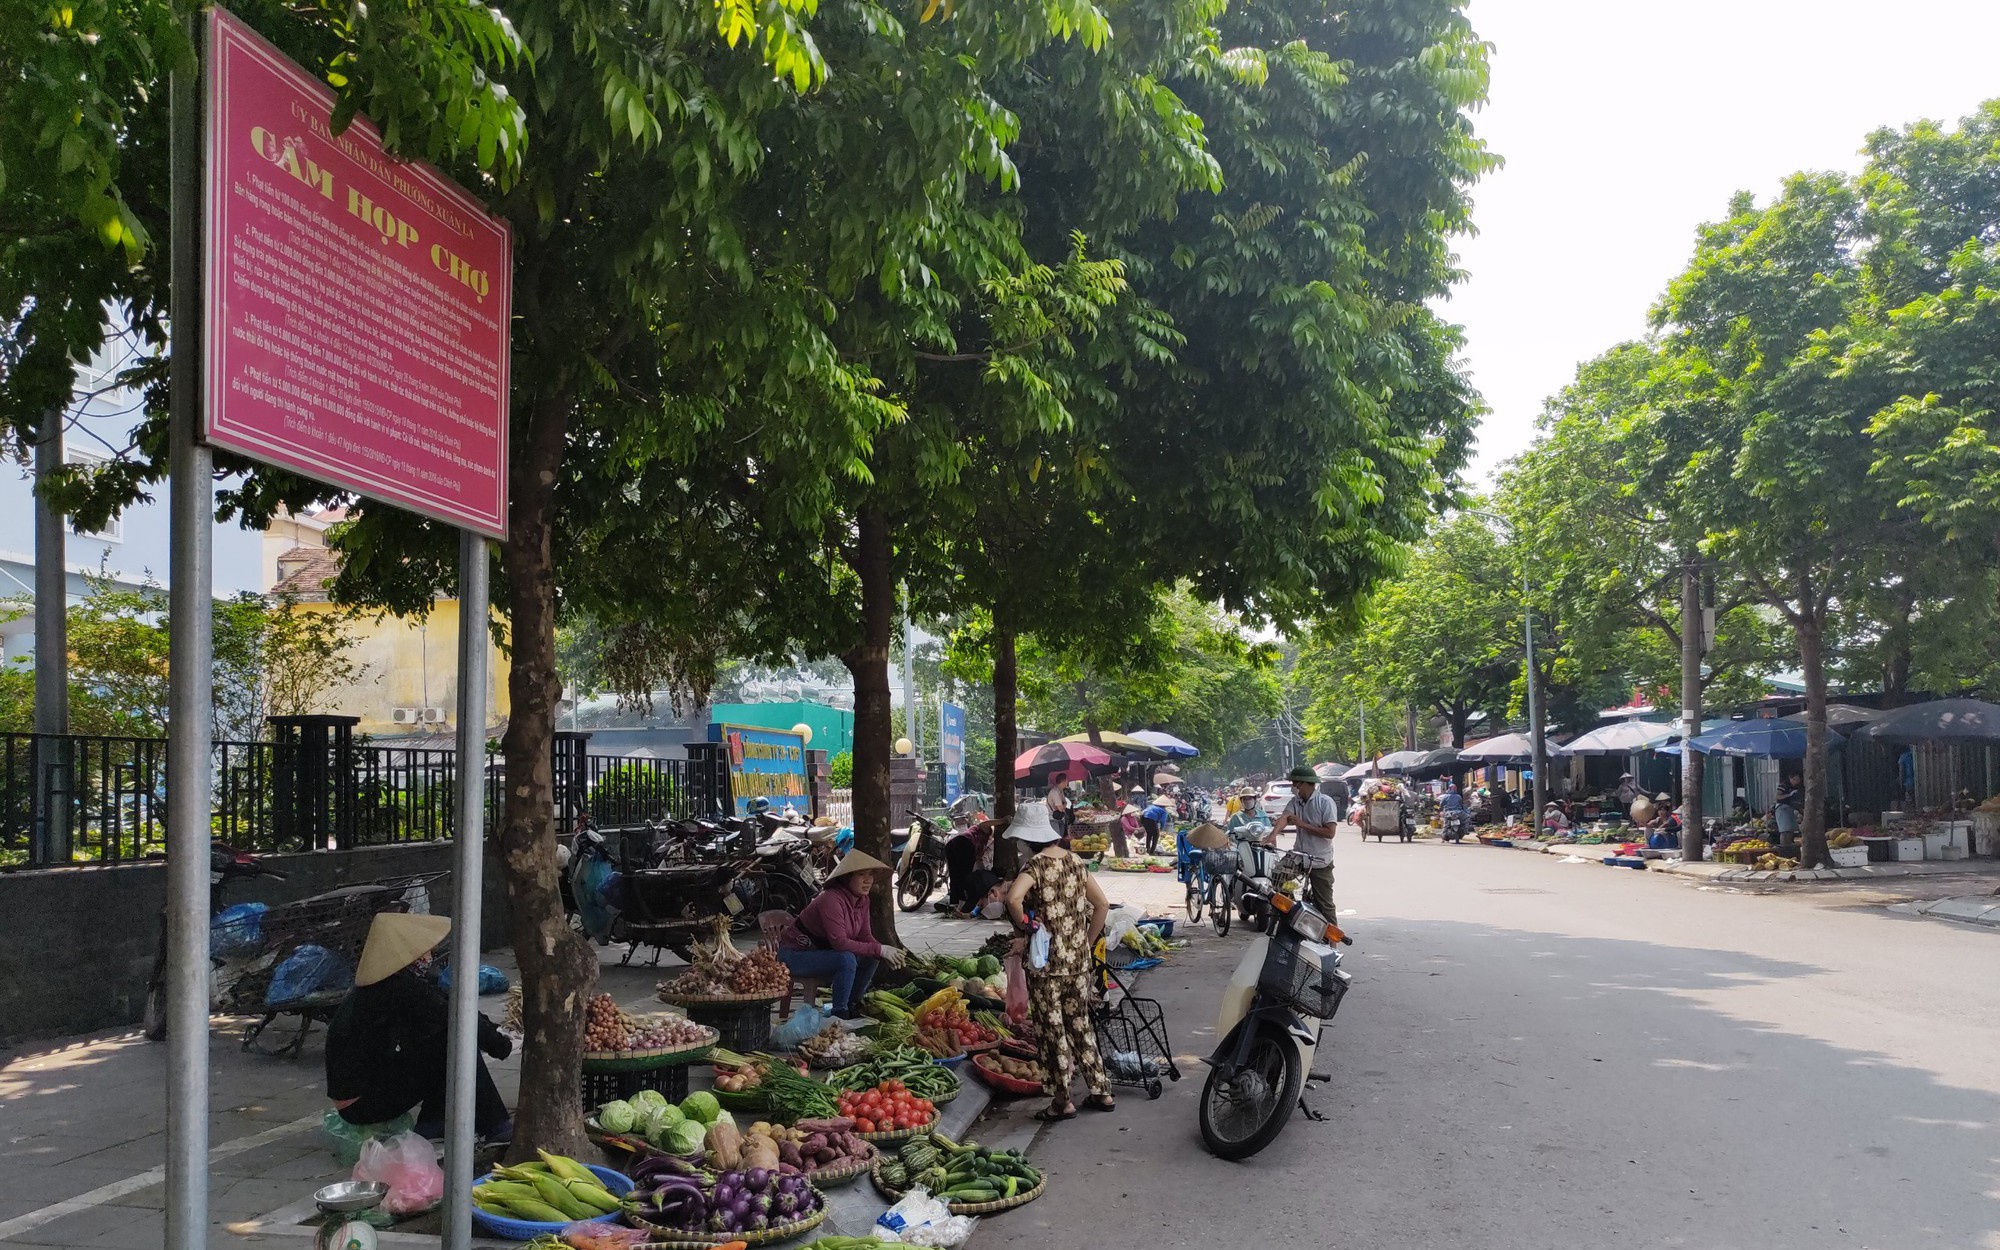 Hà Nội: "Luật ngầm" chợ đuổi Xuân La (Kỳ 1) Những khu chợ trái phép có đang được bảo kê theo kiểu “làm luật”?